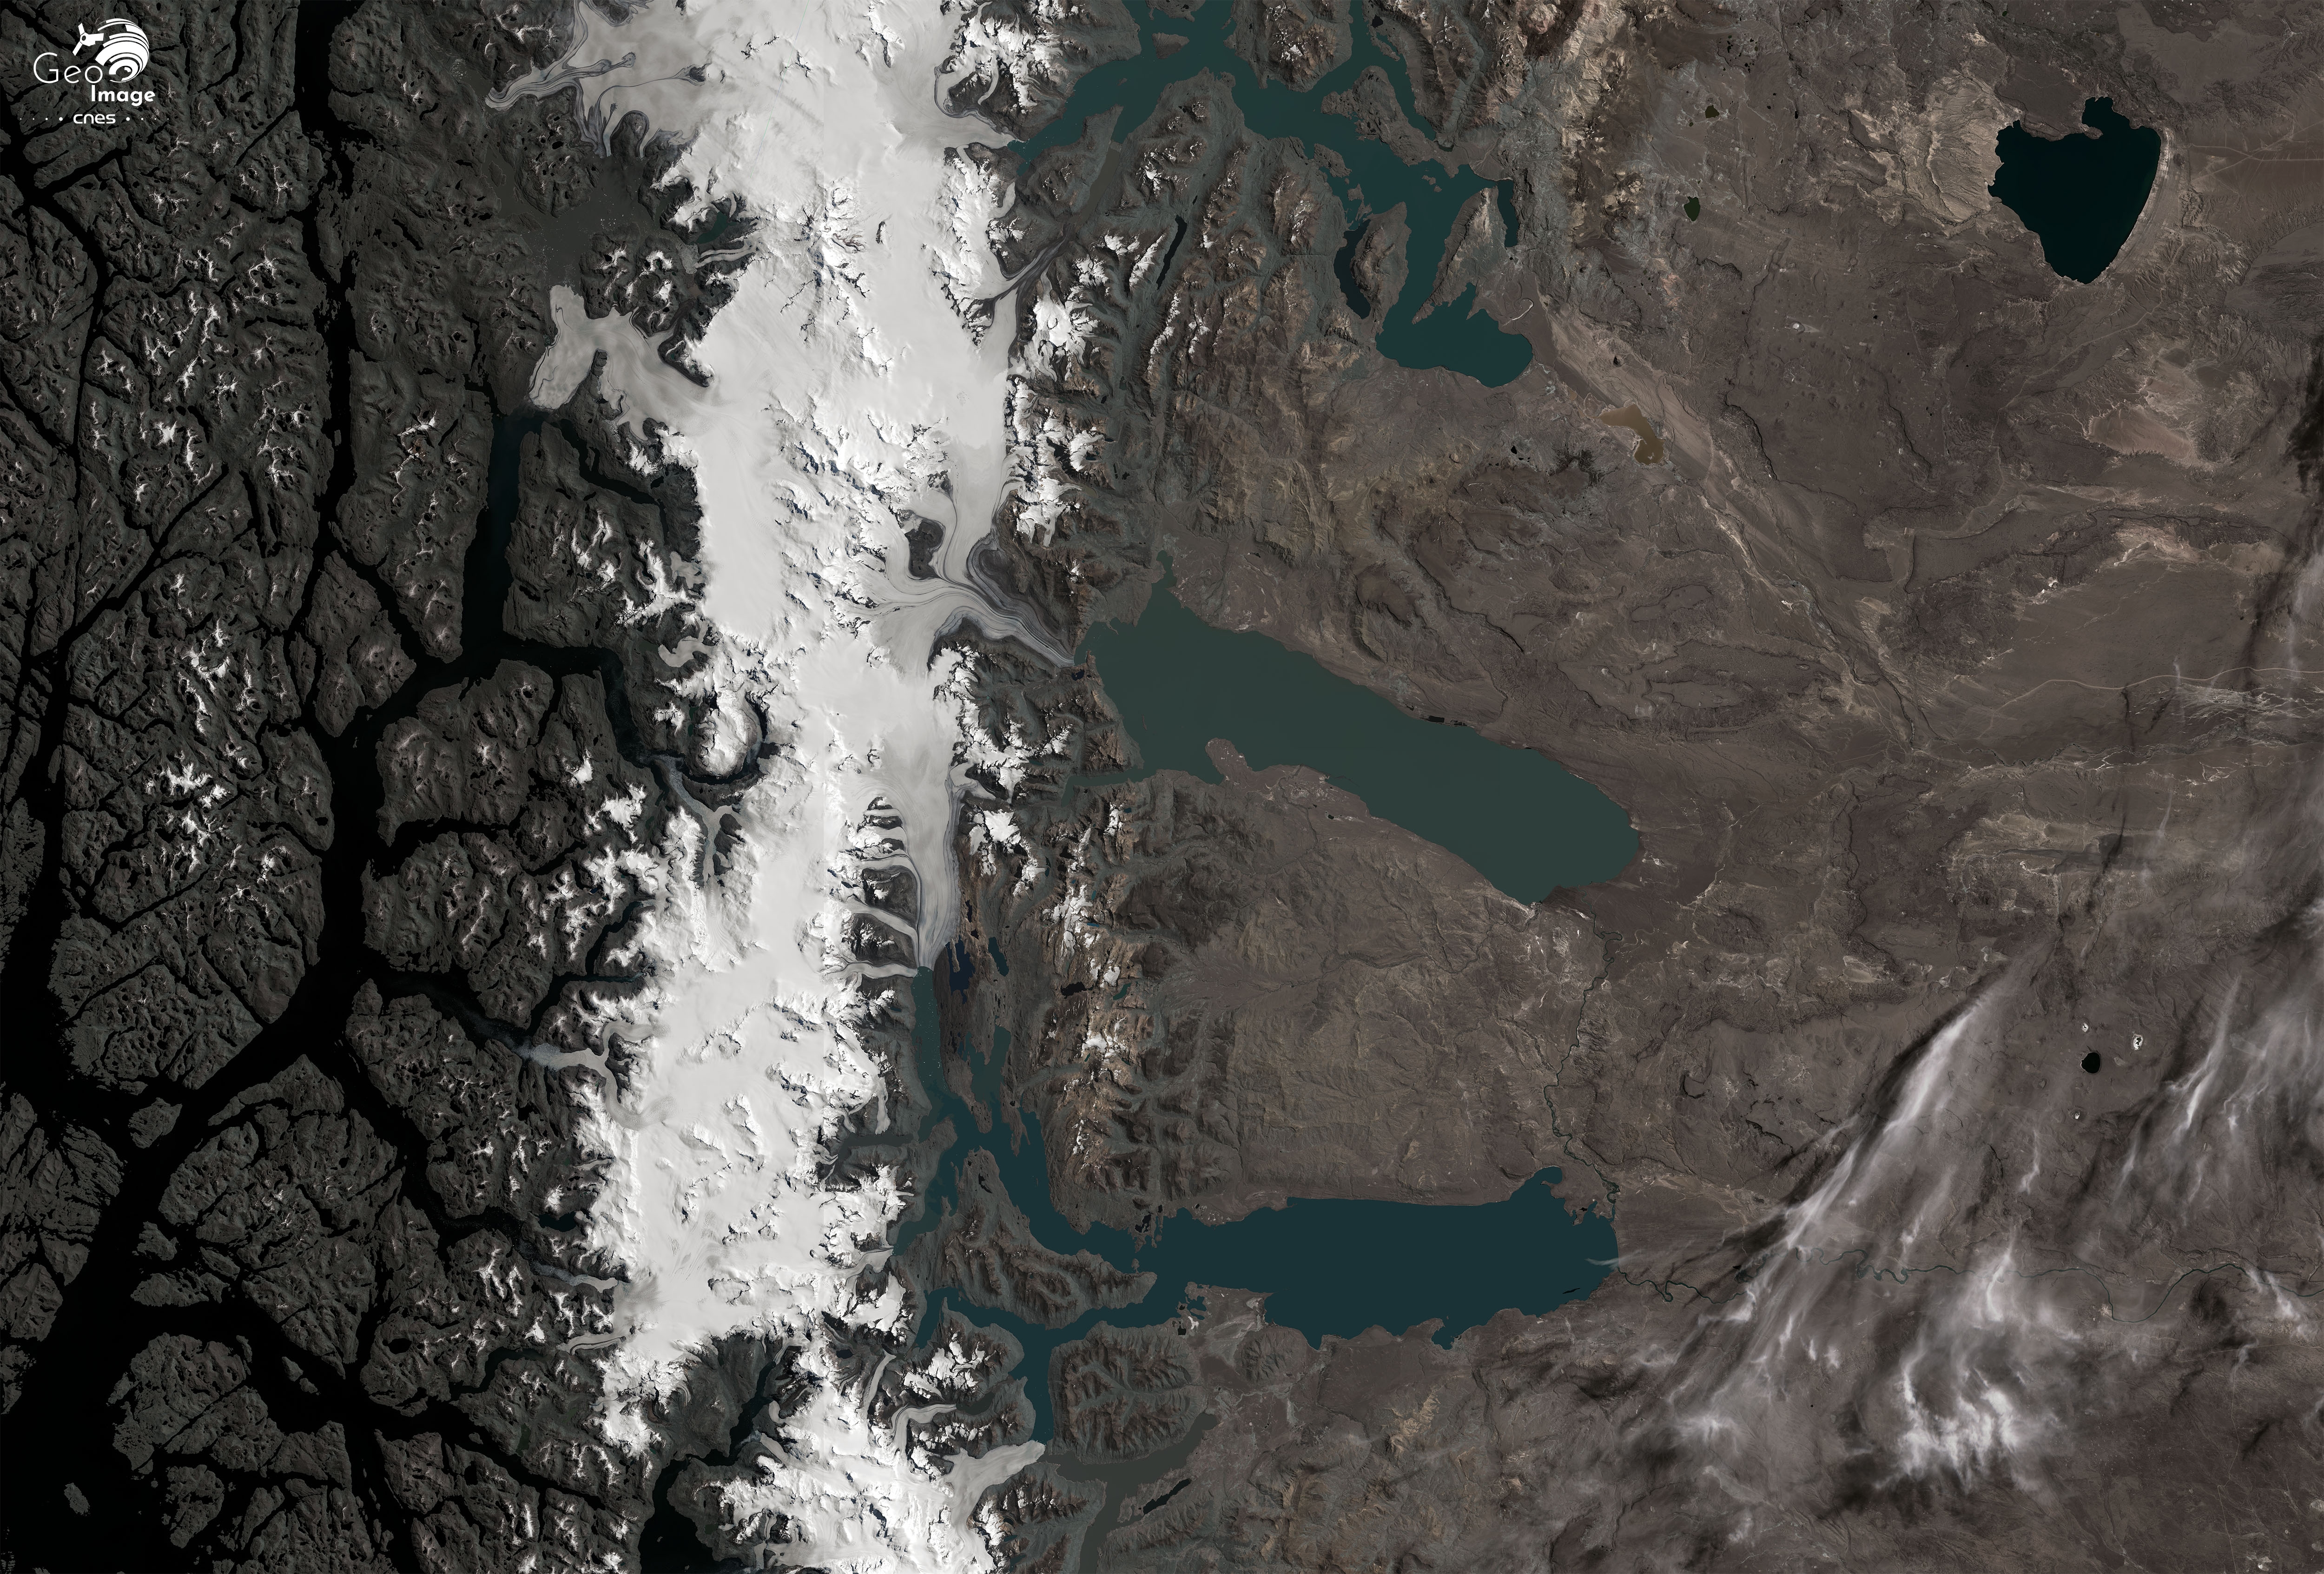 em-glacier-viedma_20210130_s2-vf.jpg